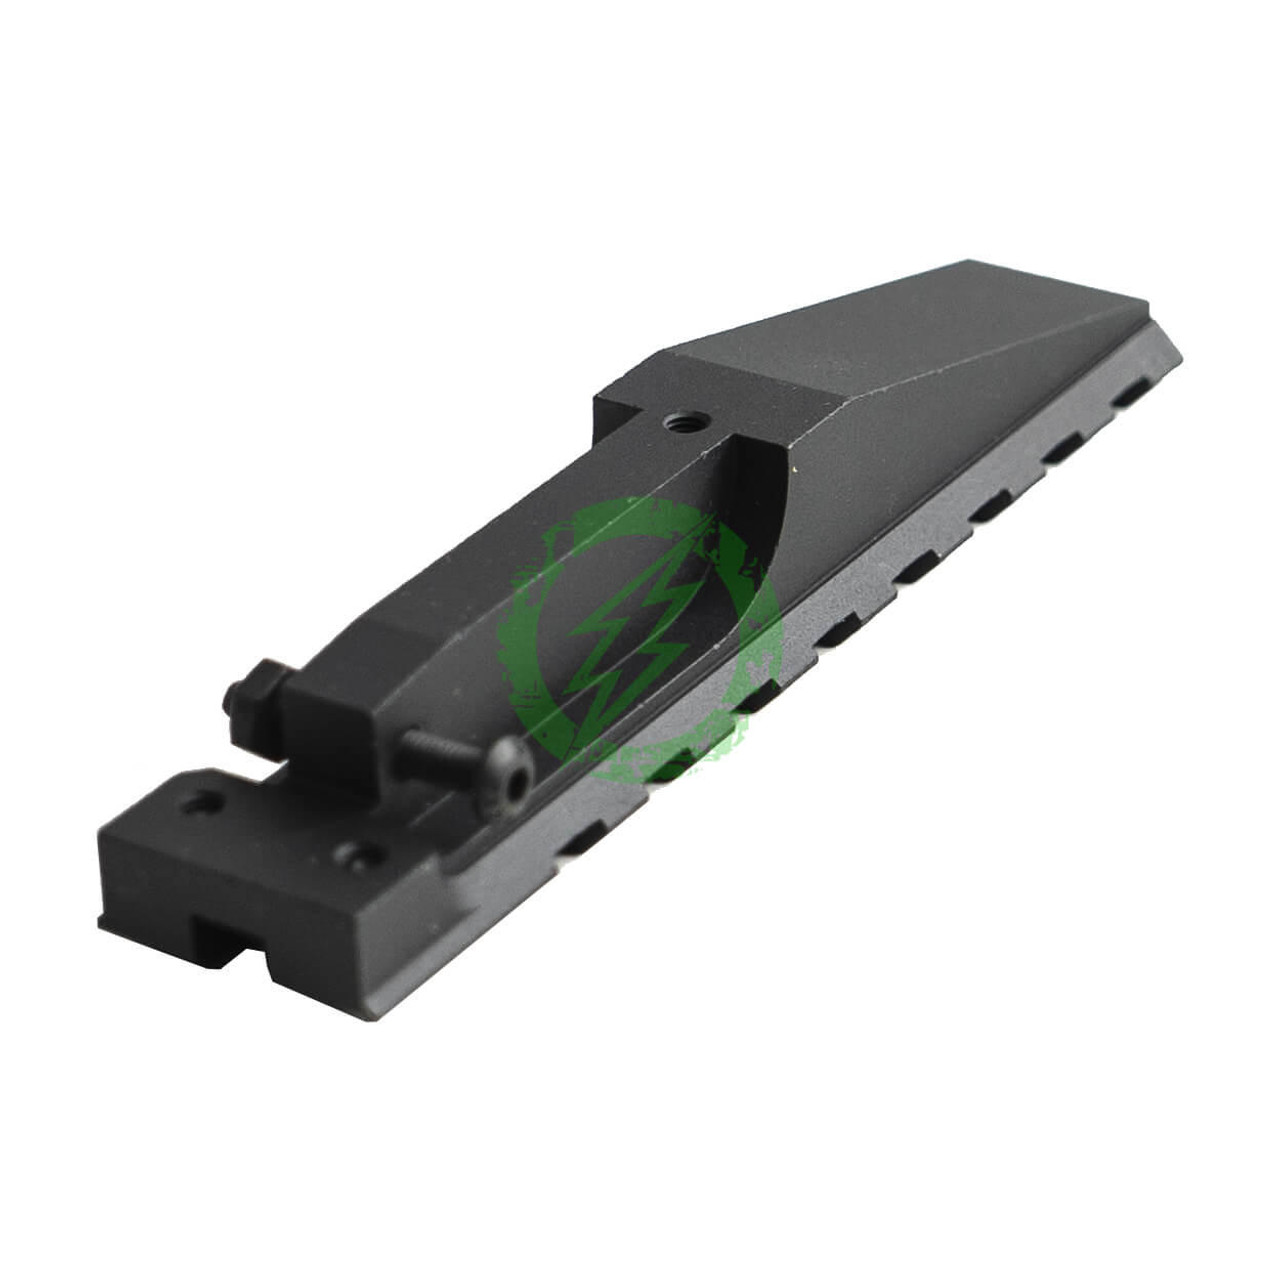  LCT CNC Aluminum Railed Rear Sight for AK Series AEG Rifles 